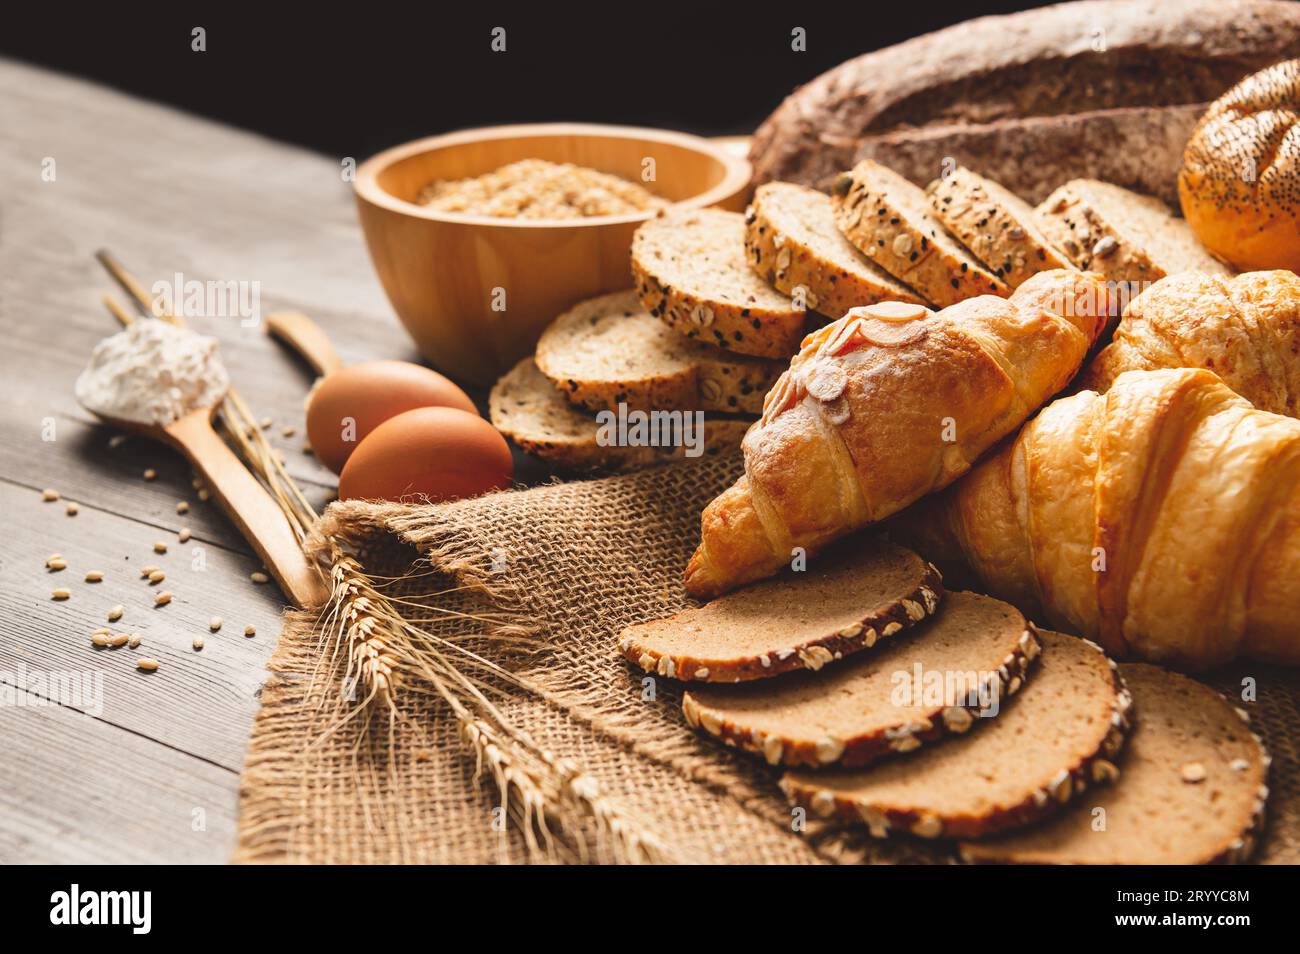 Différents types de pain avec nutrition grains entiers sur fond en bois. Nourriture et boulangerie dans le concept de cuisine. Délicieux petit déjeuner Banque D'Images